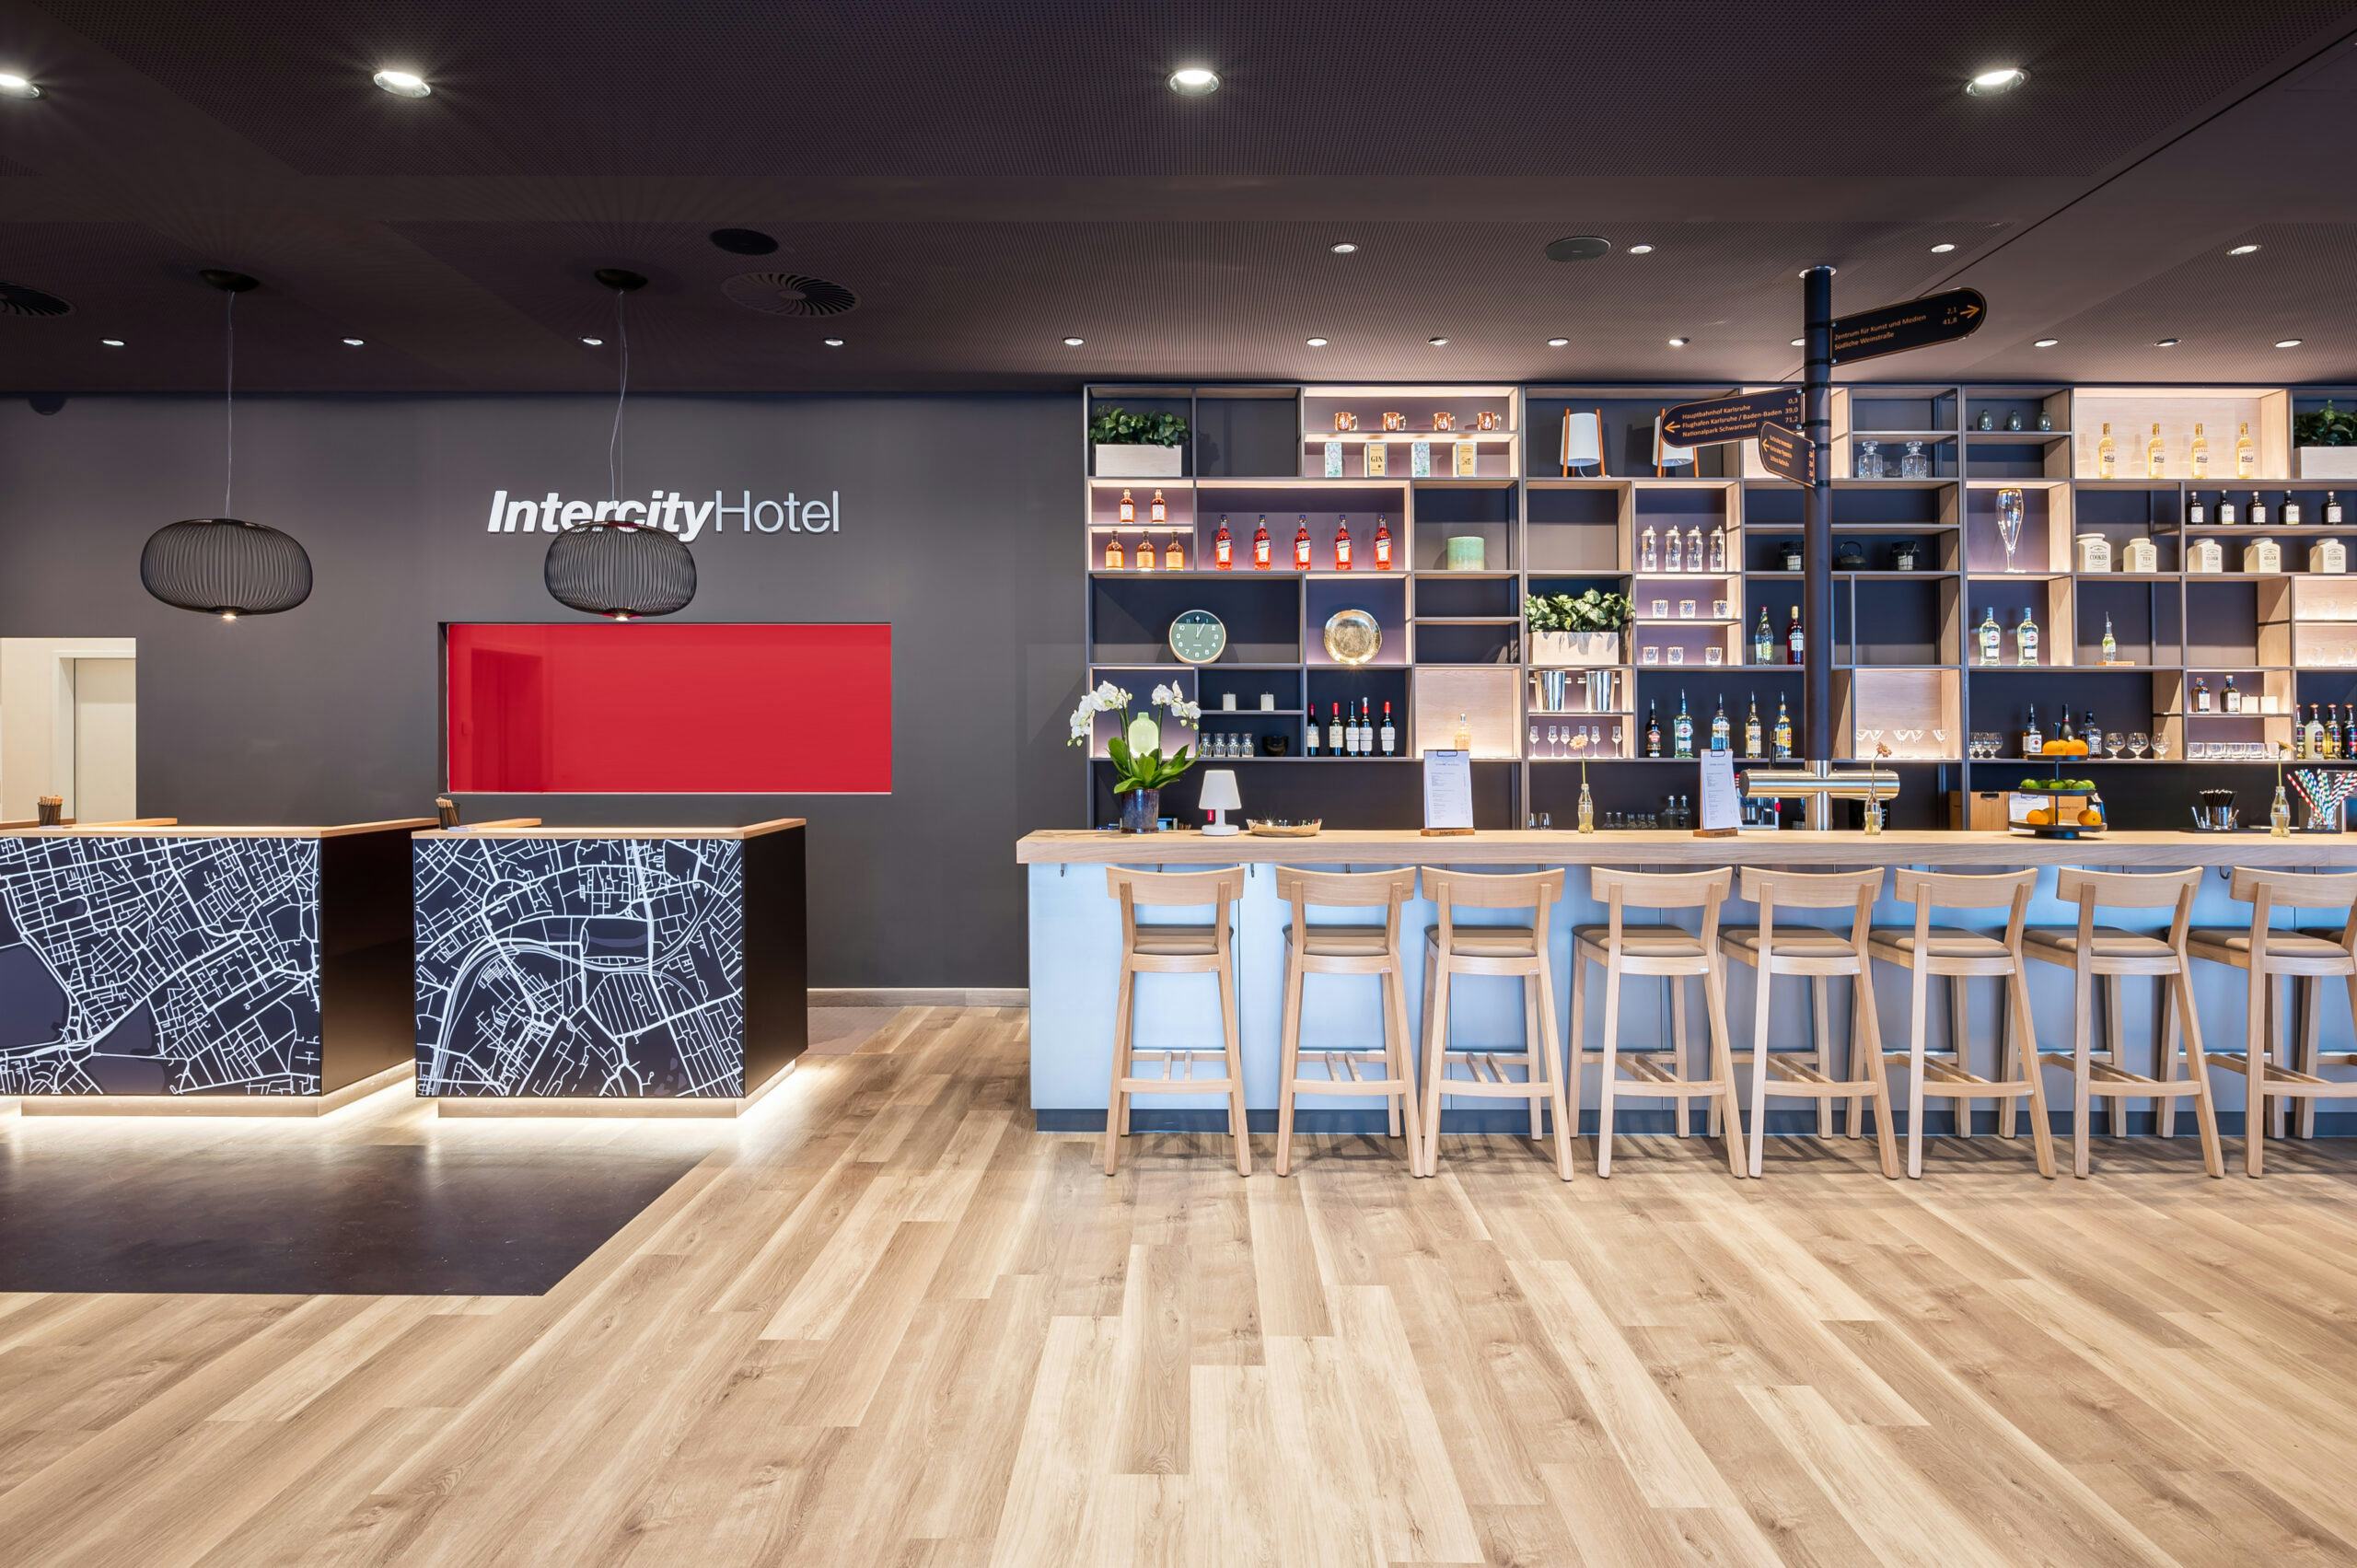 IntercityHotel is klaar voor nieuwe generatie gasten én medewerkers